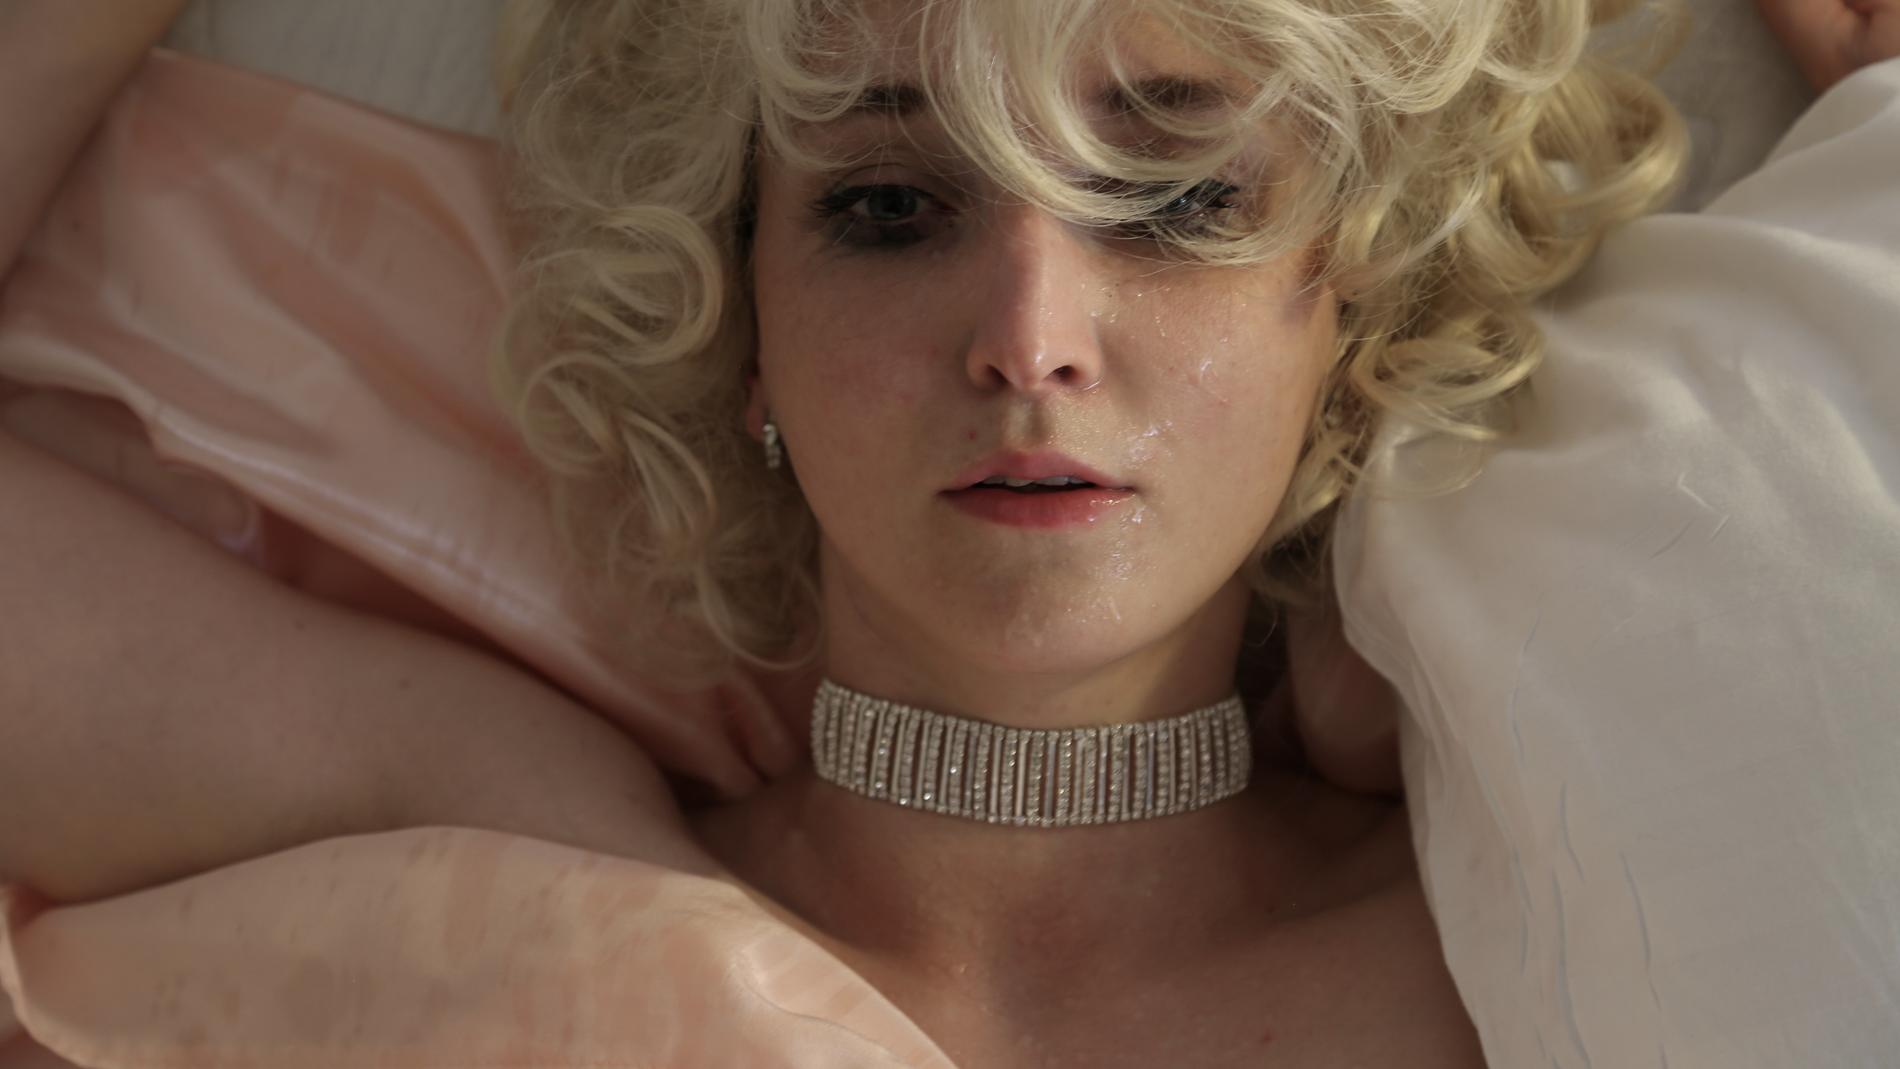 I Poste Restantes ”It’s a tragedy”, som spelas på Hotell Hötorget, dubbleras recensentens upplevelse med Marilyn Monroes tragiska livsslut.